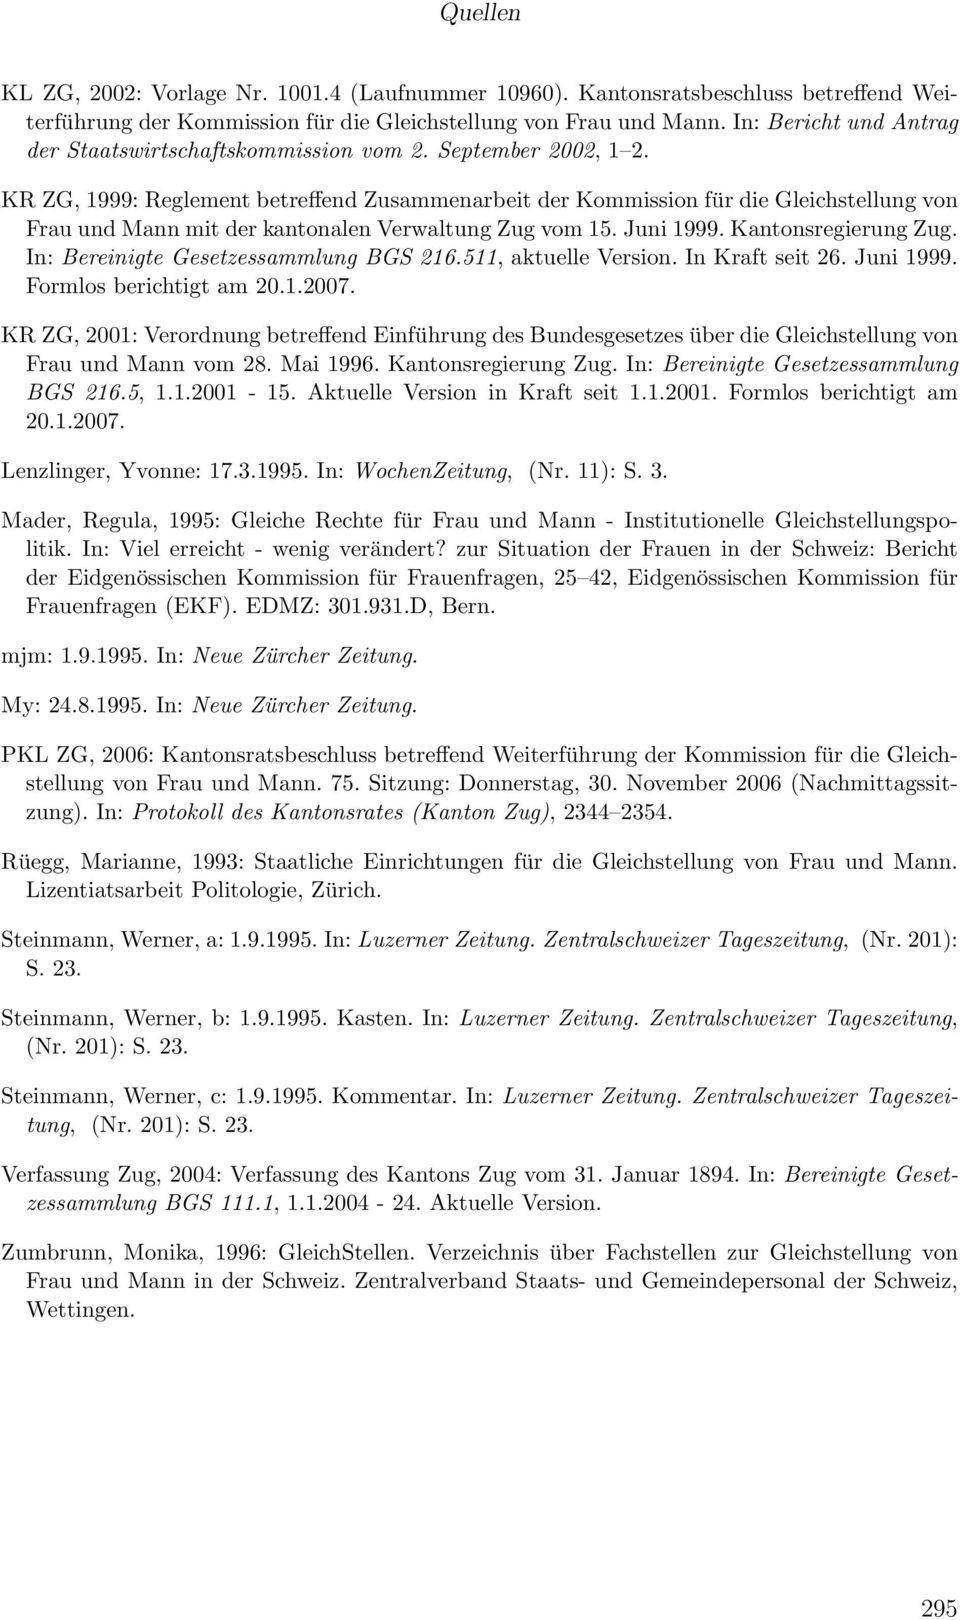 KR ZG, 1999: Reglement betreffend Zusammenarbeit der Kommission für die Gleichstellung von Frau und Mann mit der kantonalen Verwaltung Zug vom 15. Juni 1999. Kantonsregierung Zug.